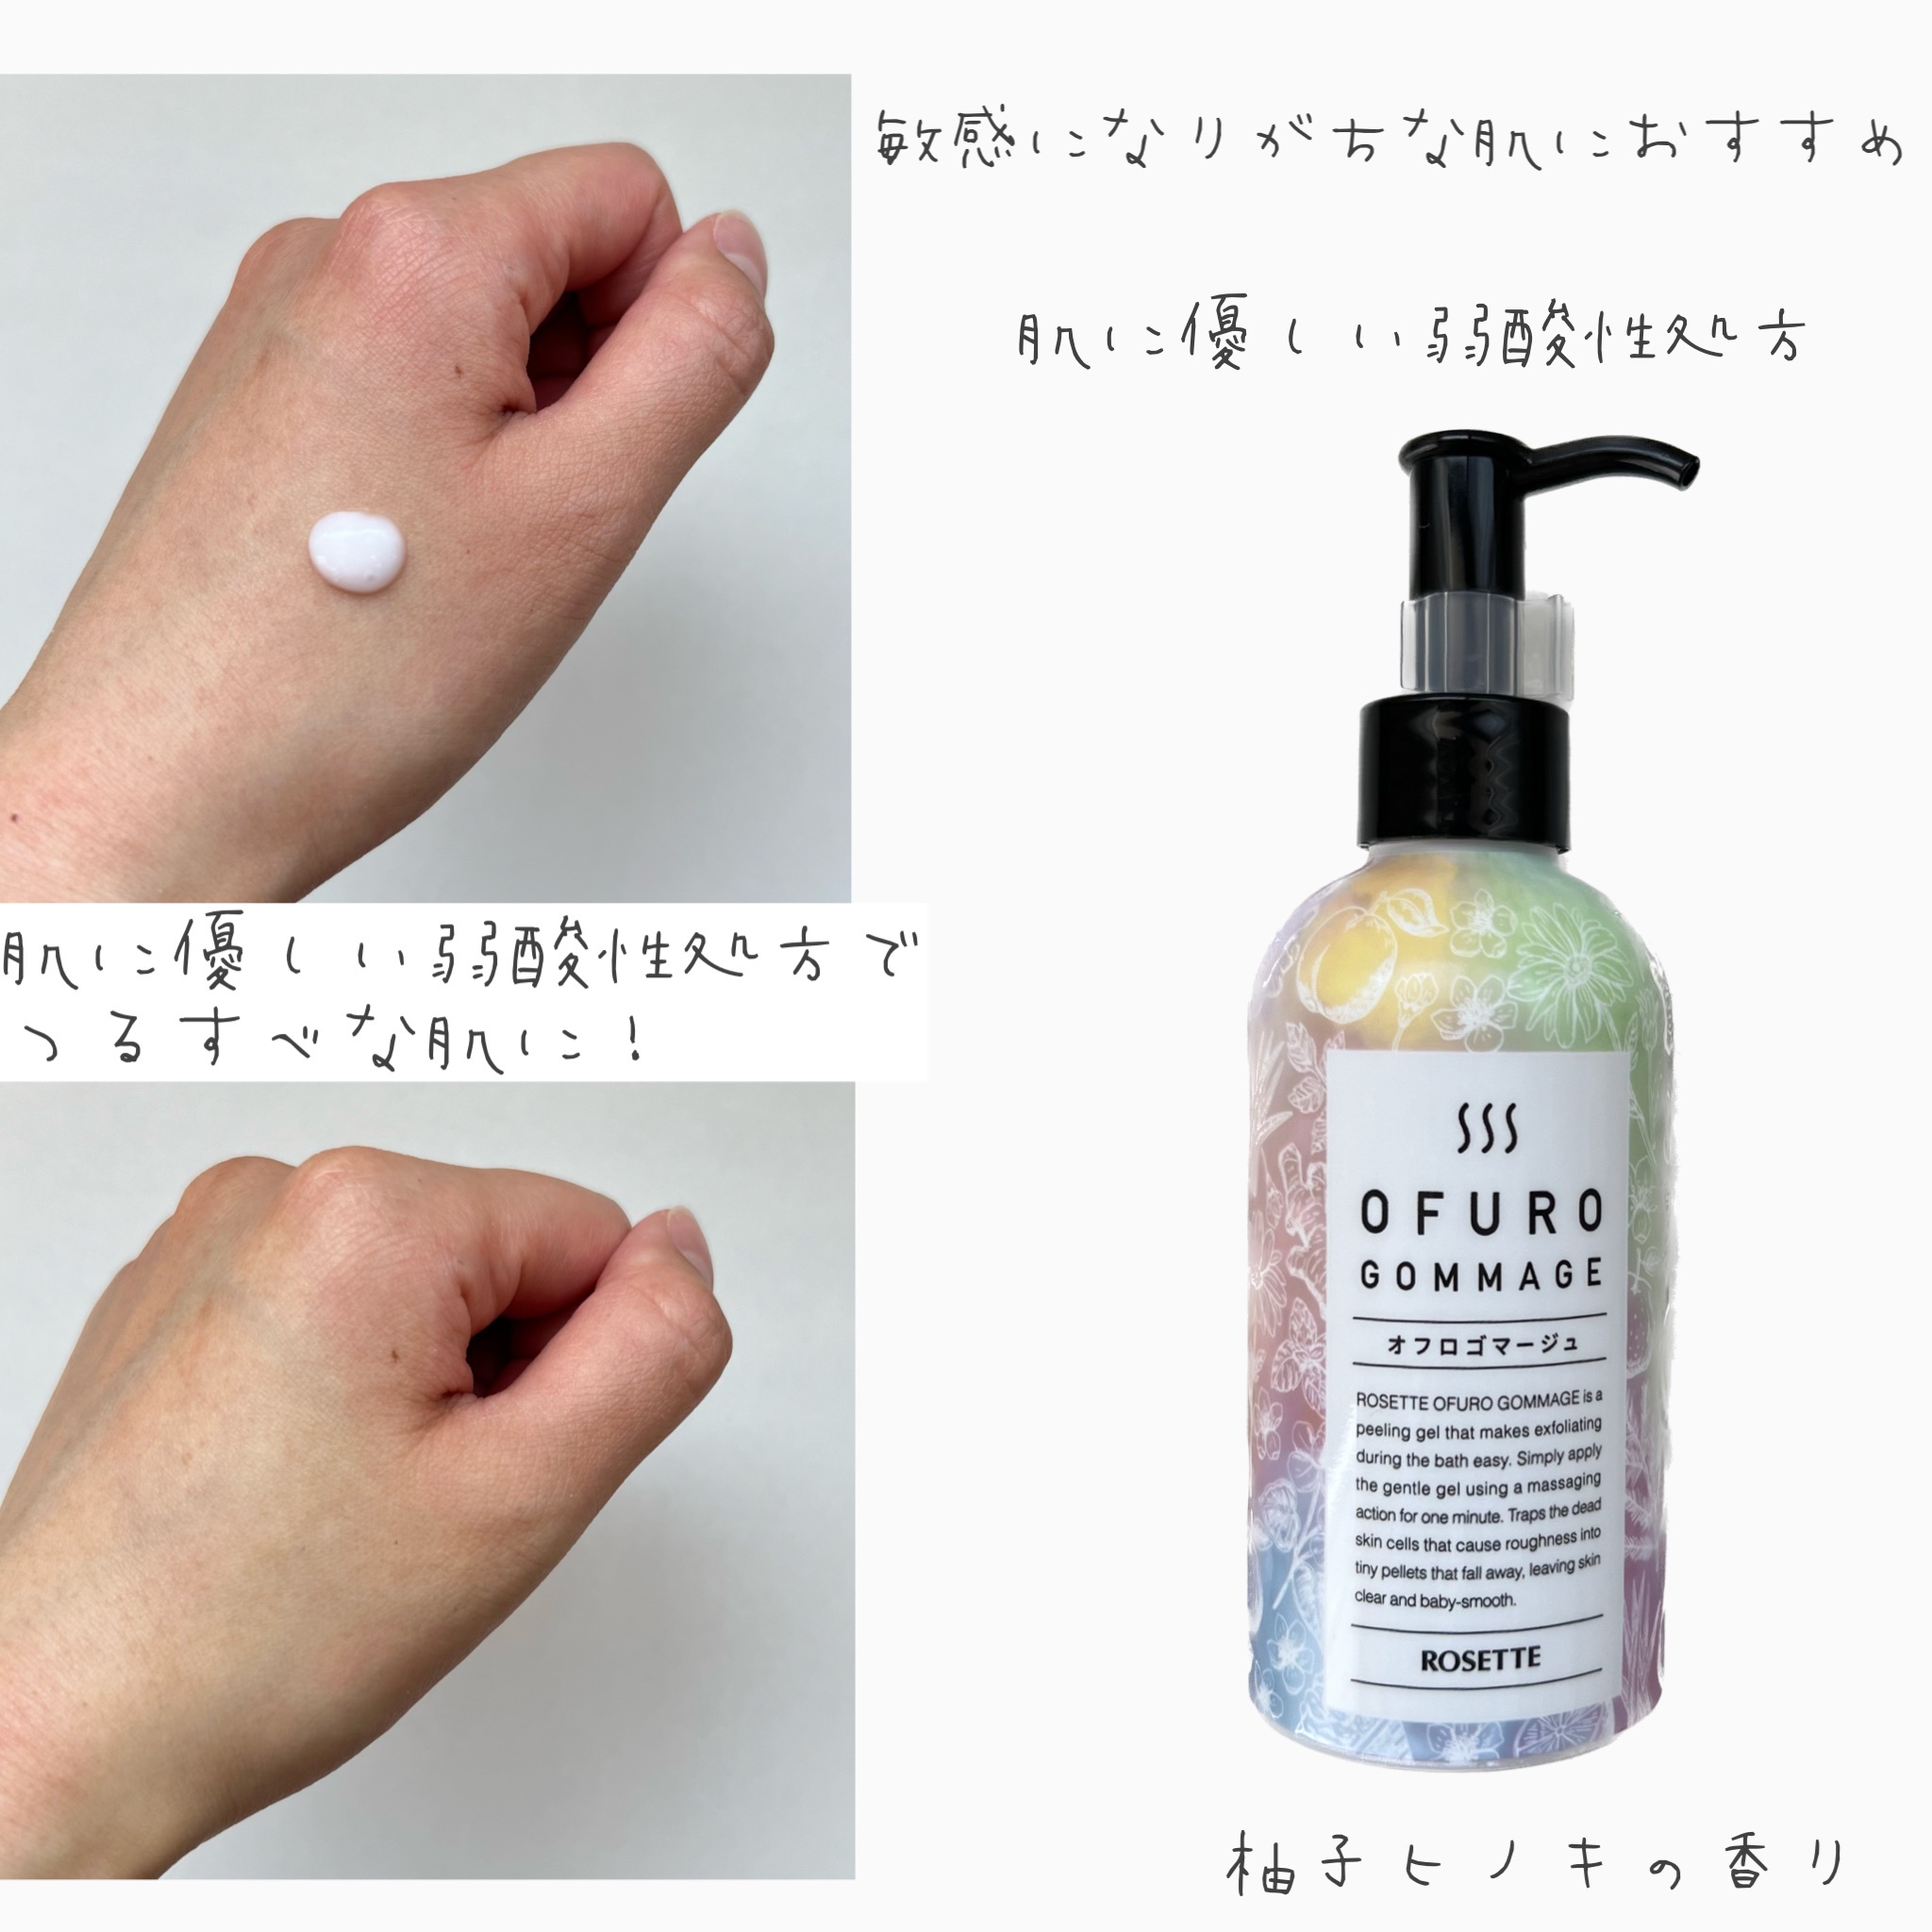 ロゼット オフロゴマージュ 柚子ヒノキの香り 180g